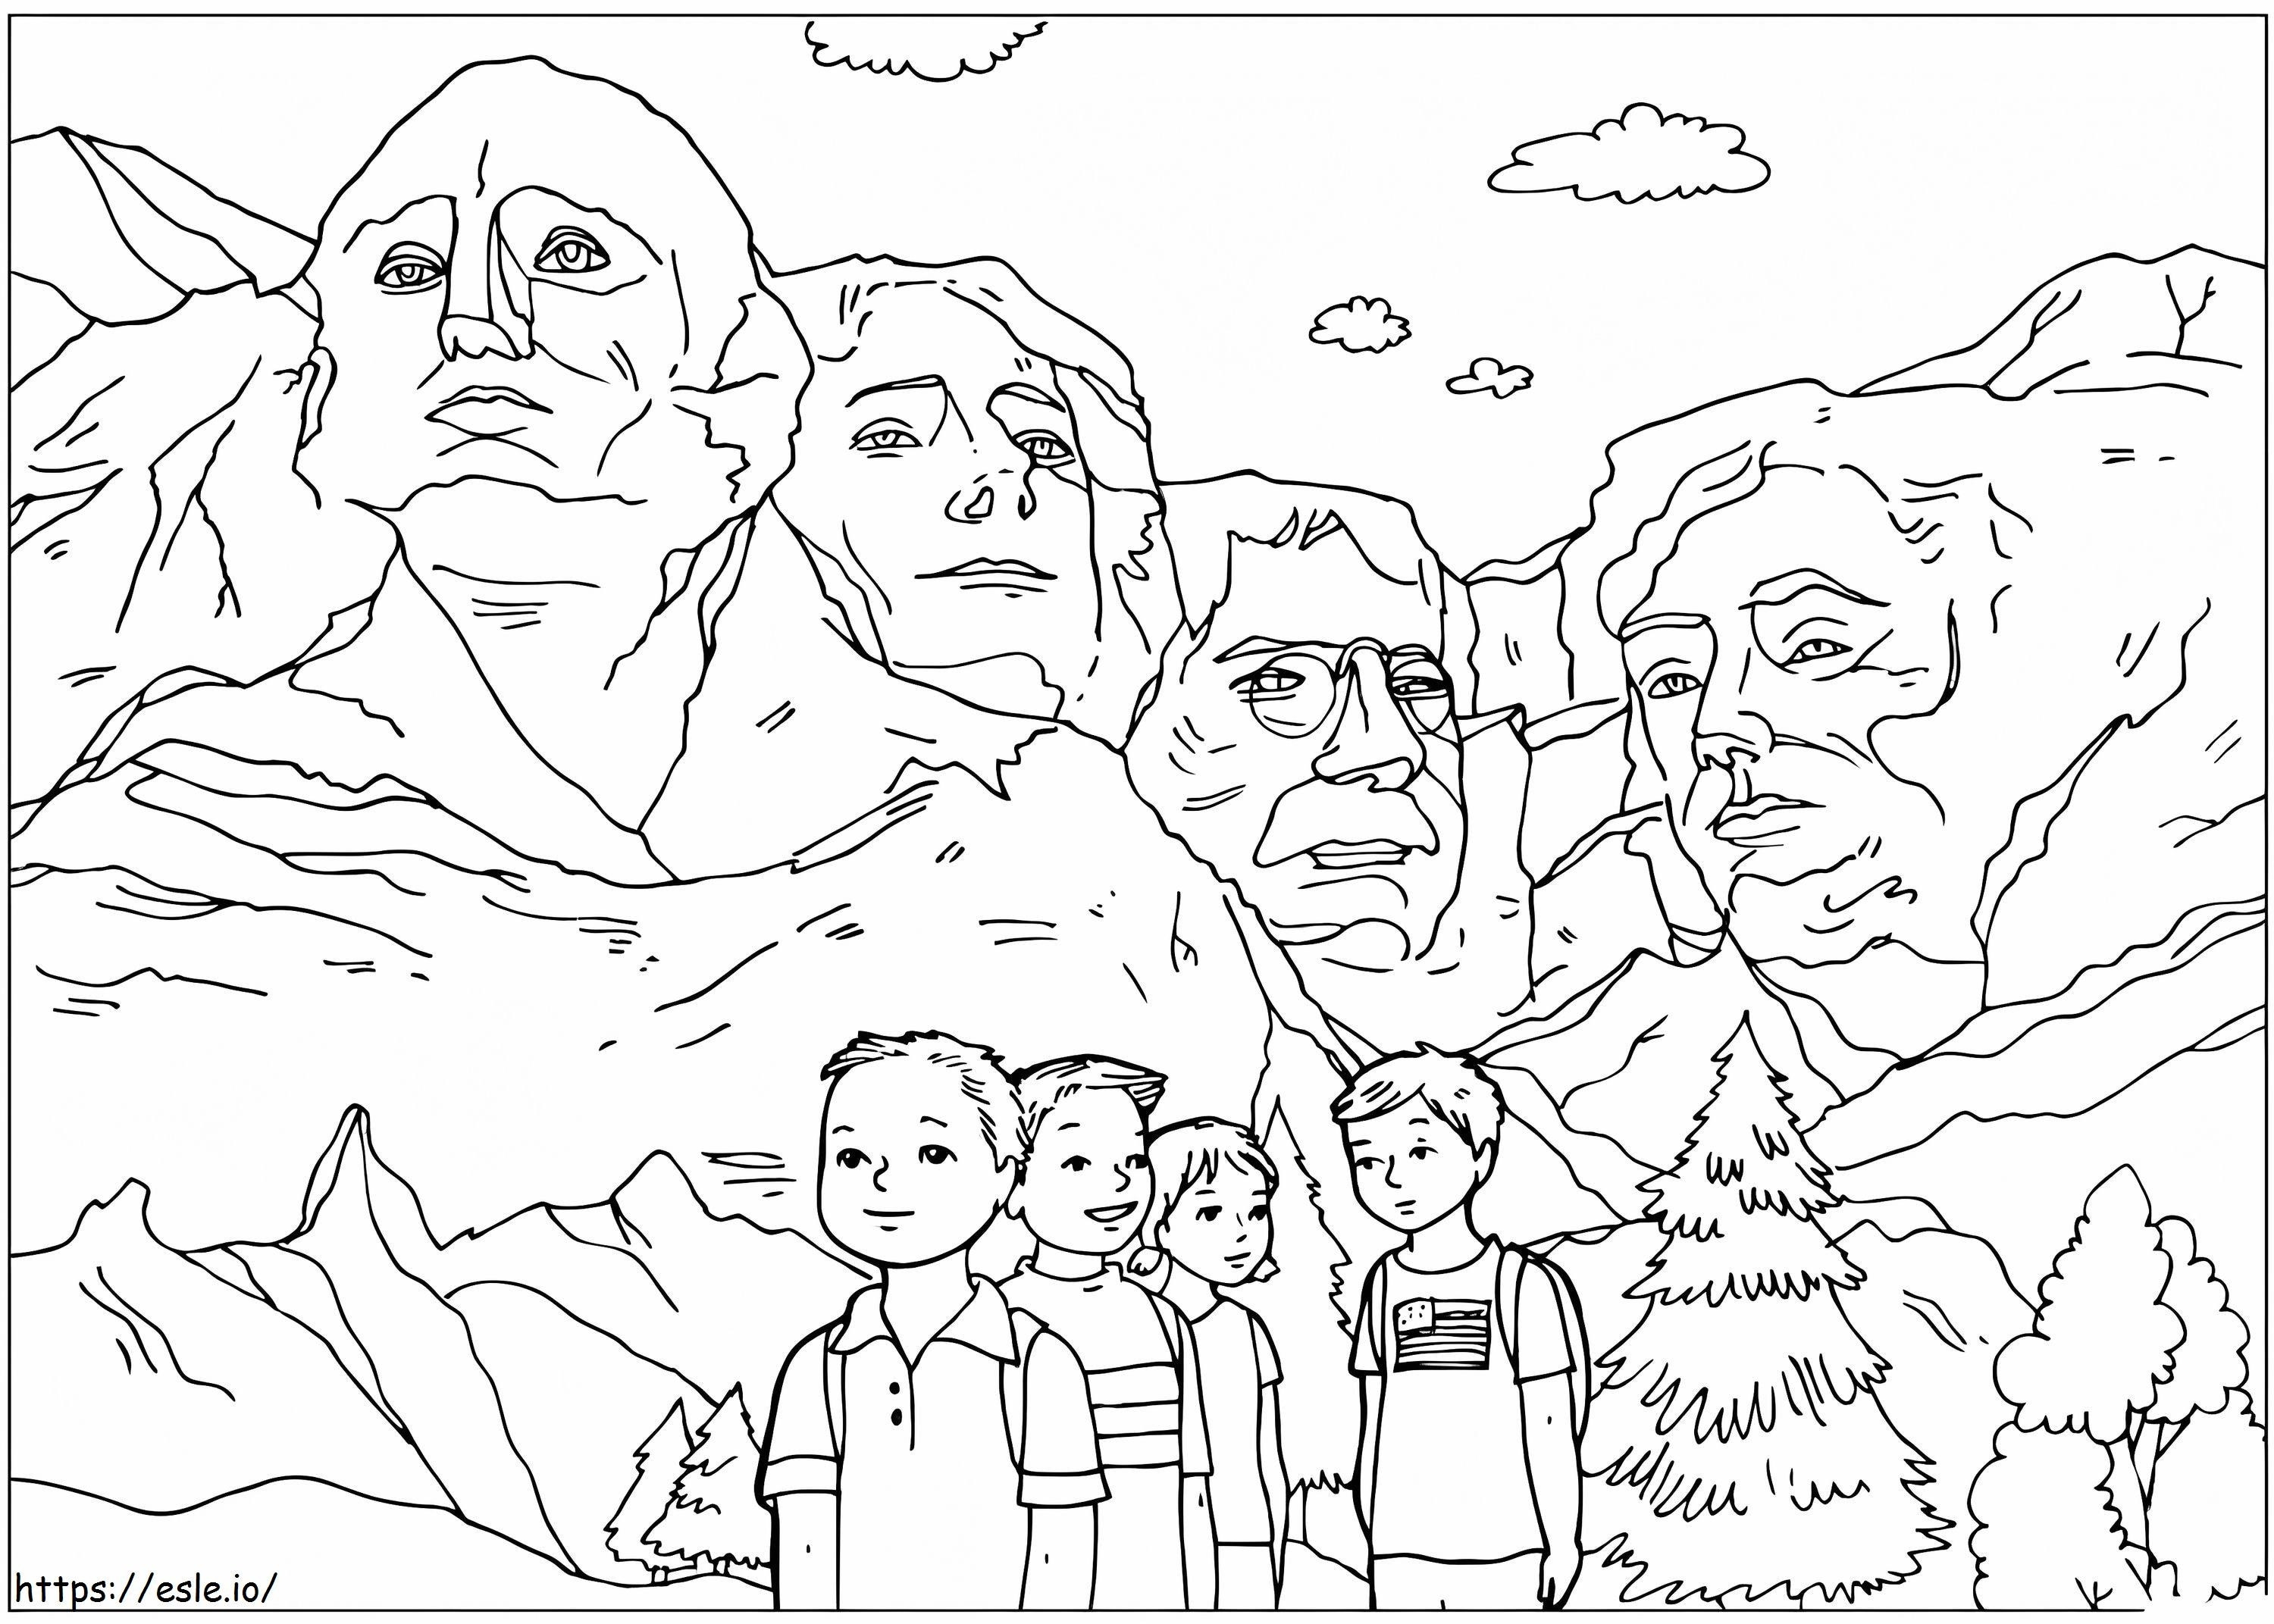 Coloriage Mont Rushmore gratuit à imprimer dessin